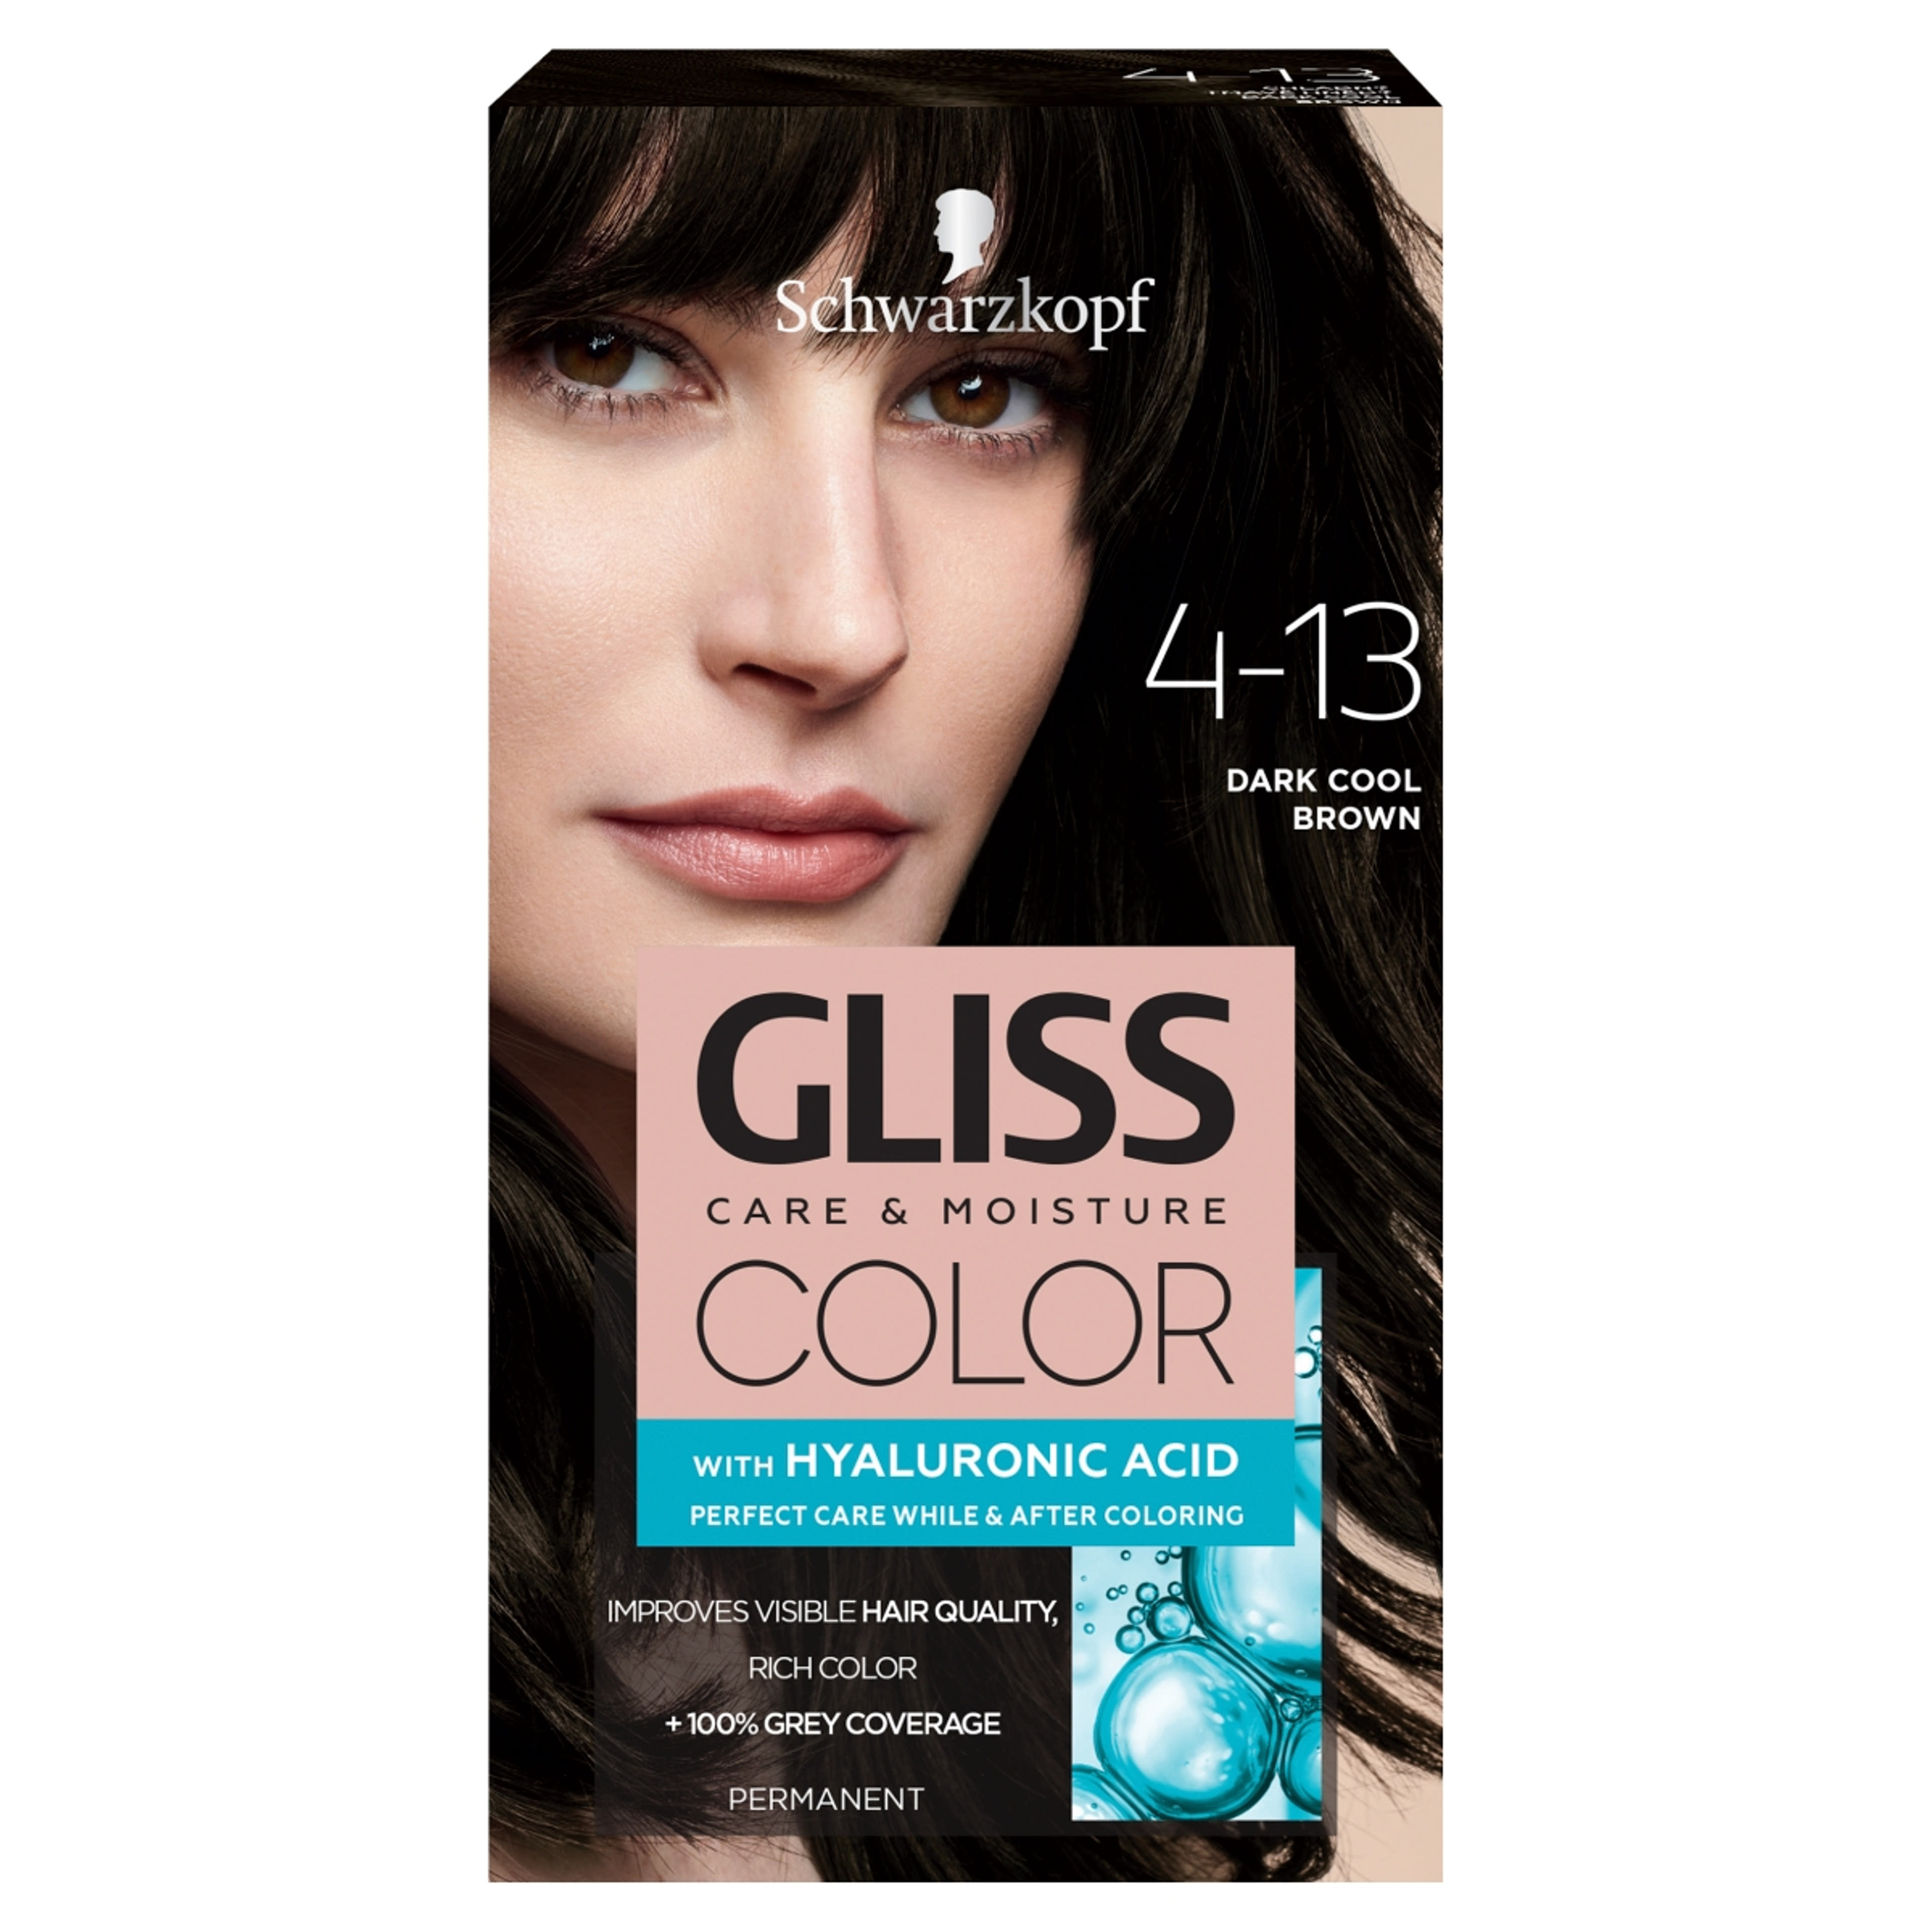 Gliss Color tartós hajfesték 4-13 Hűvös sötétbarna - 1 db